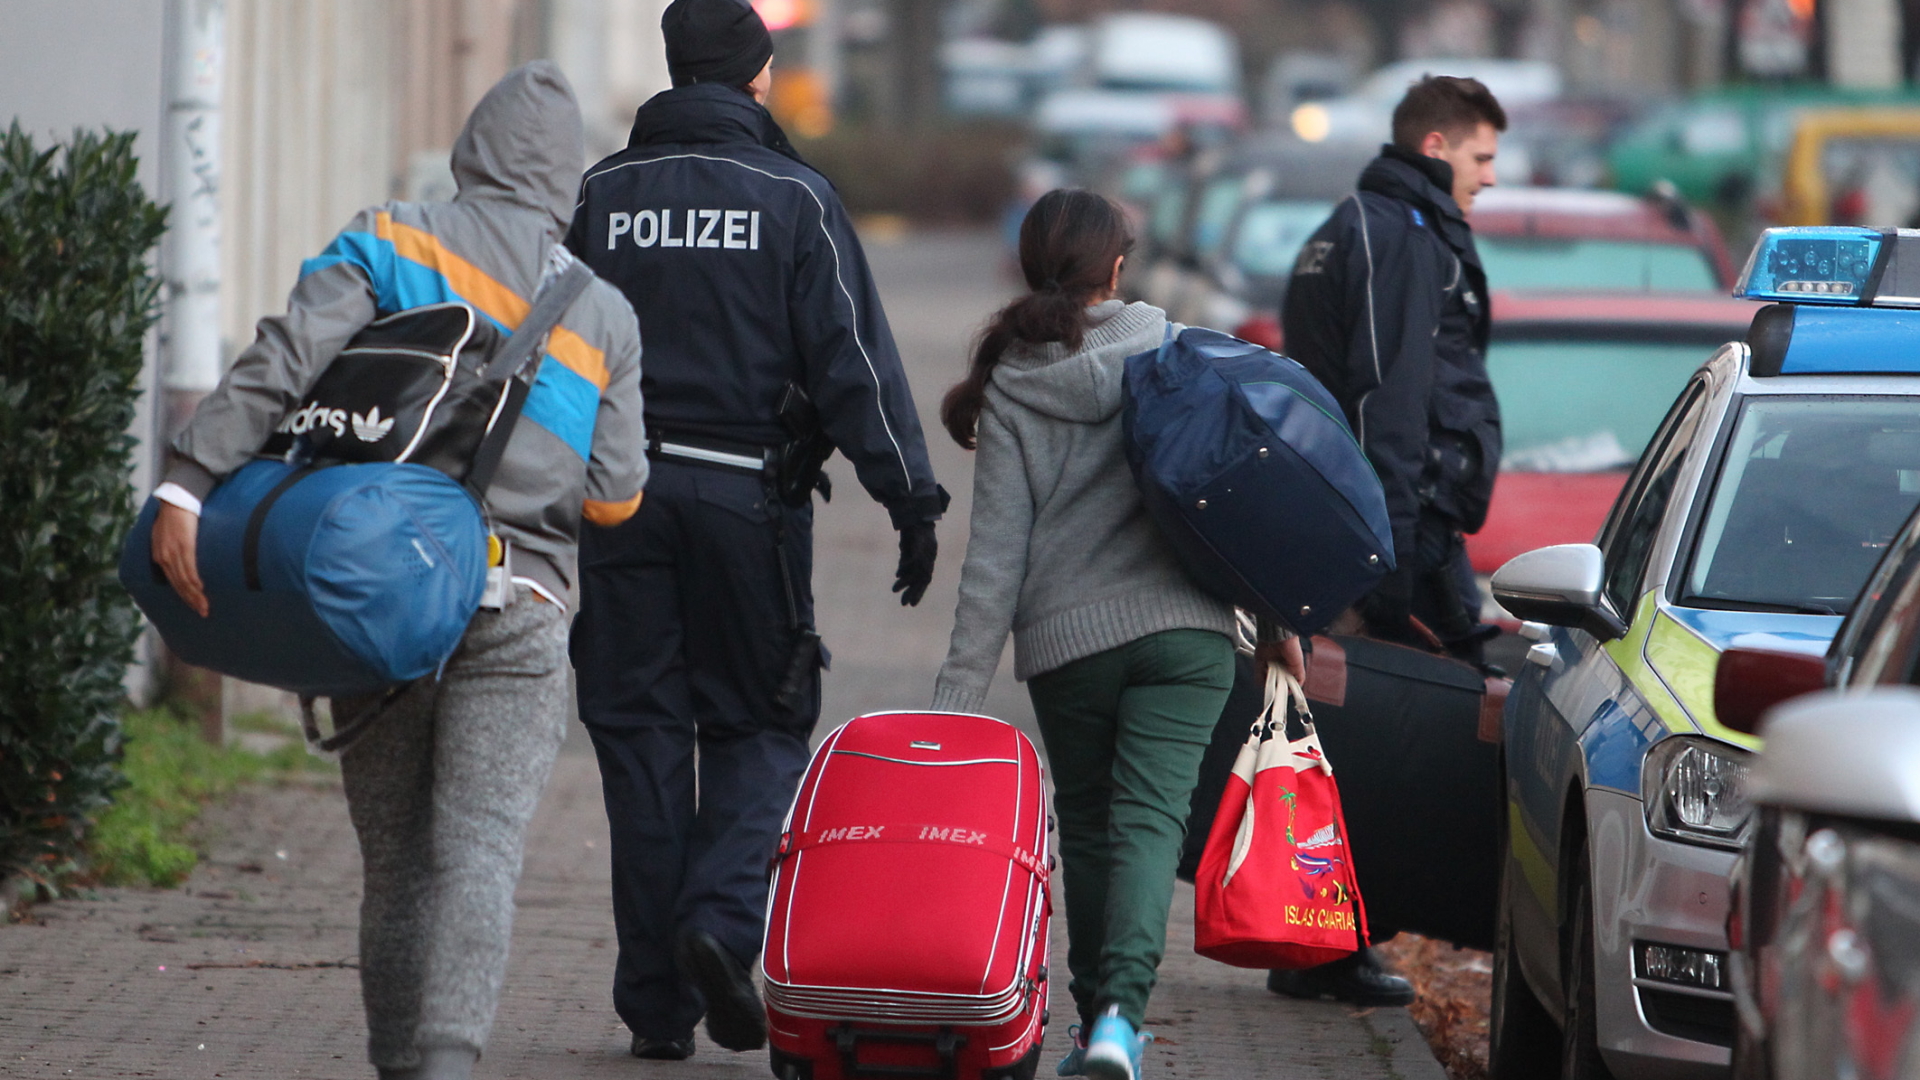 Abgelehnte Asylbewerber werden von Polizisten zum Flughafen gebracht (Archivbild) | dpa